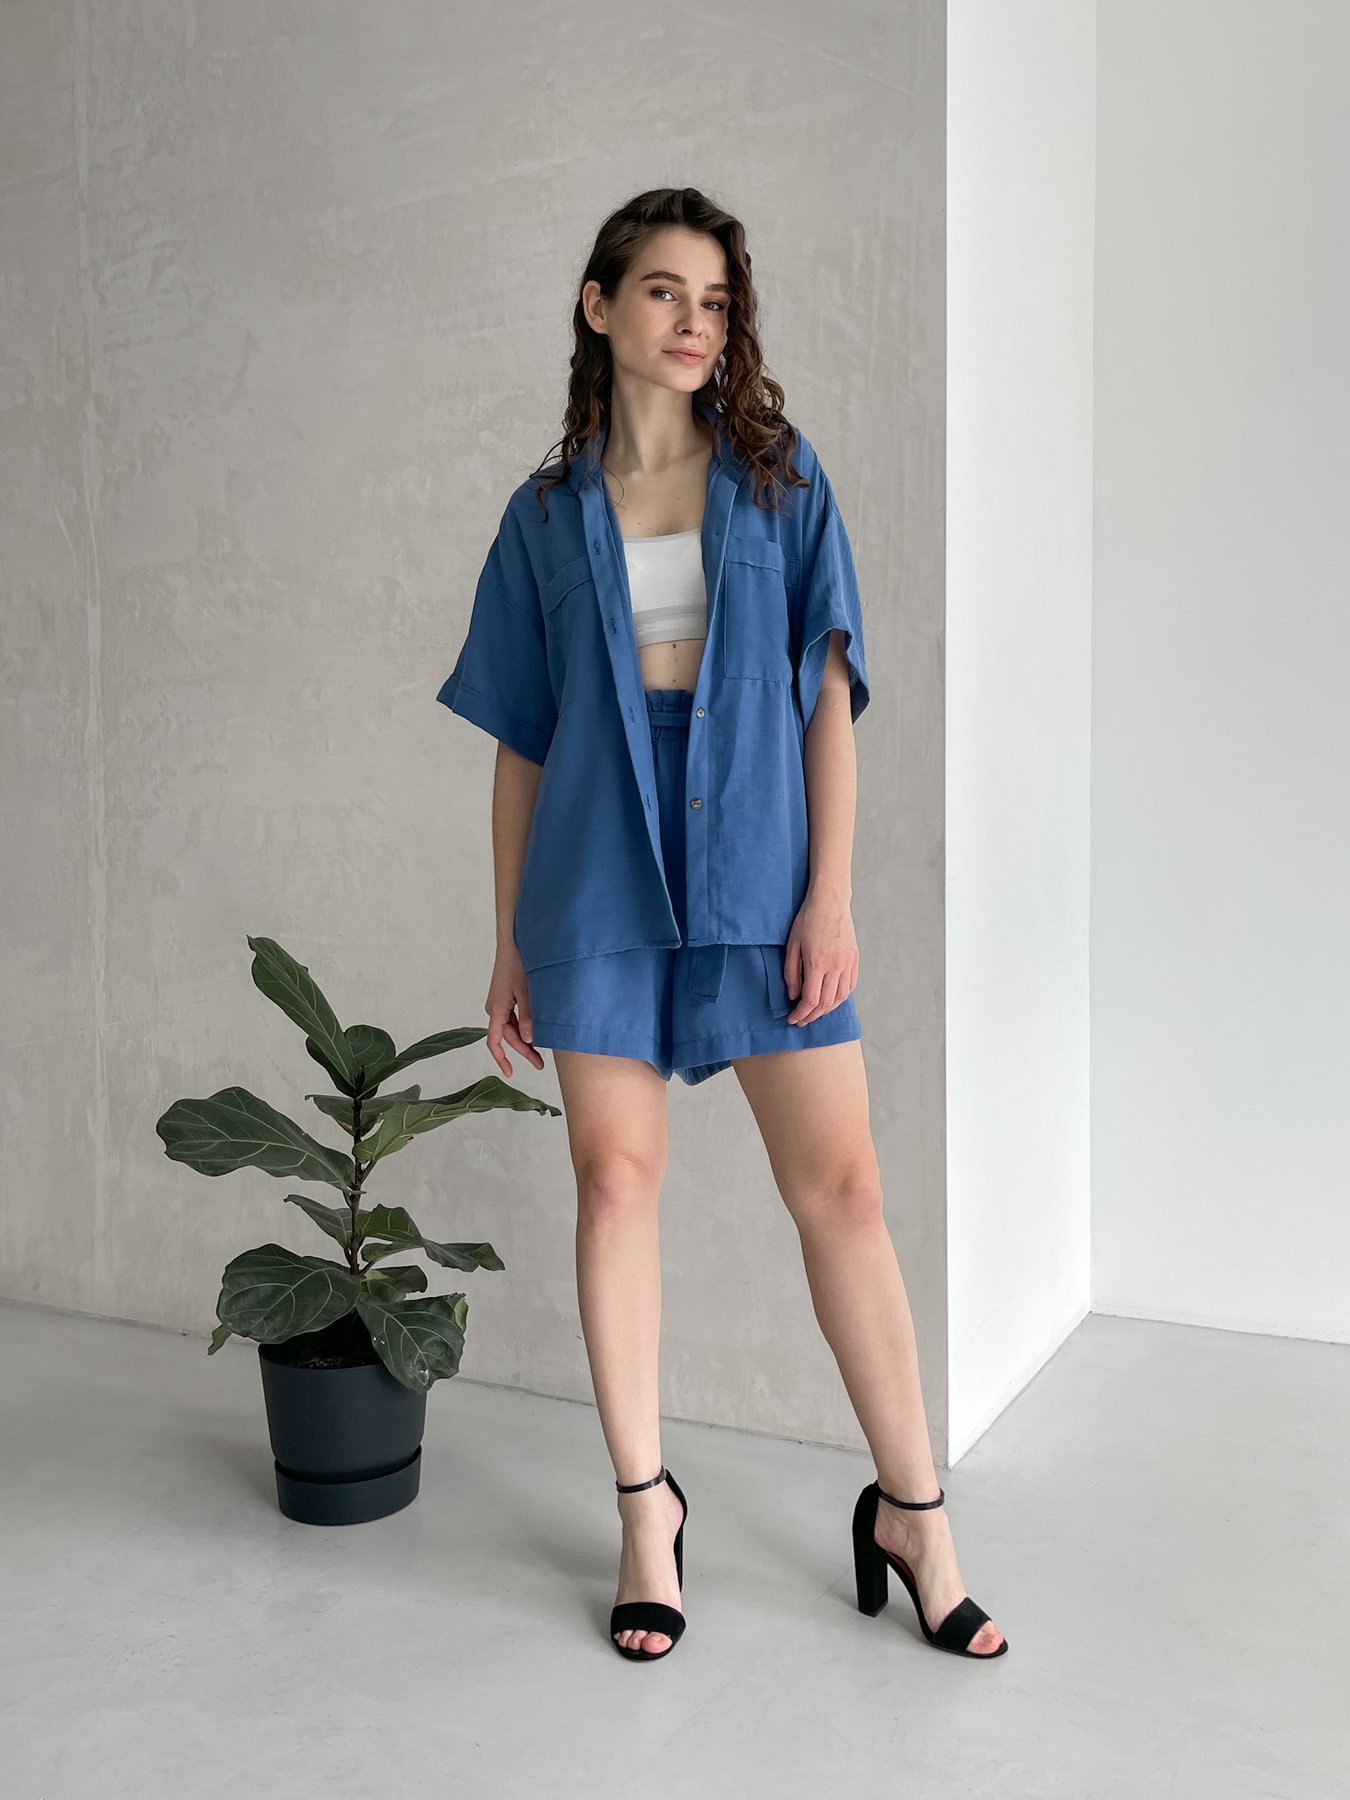 Купить Женский костюм с шортами бермудами и рубашкой из льна синий Merlini Альба 100000563, размер 42-44 в интернет-магазине